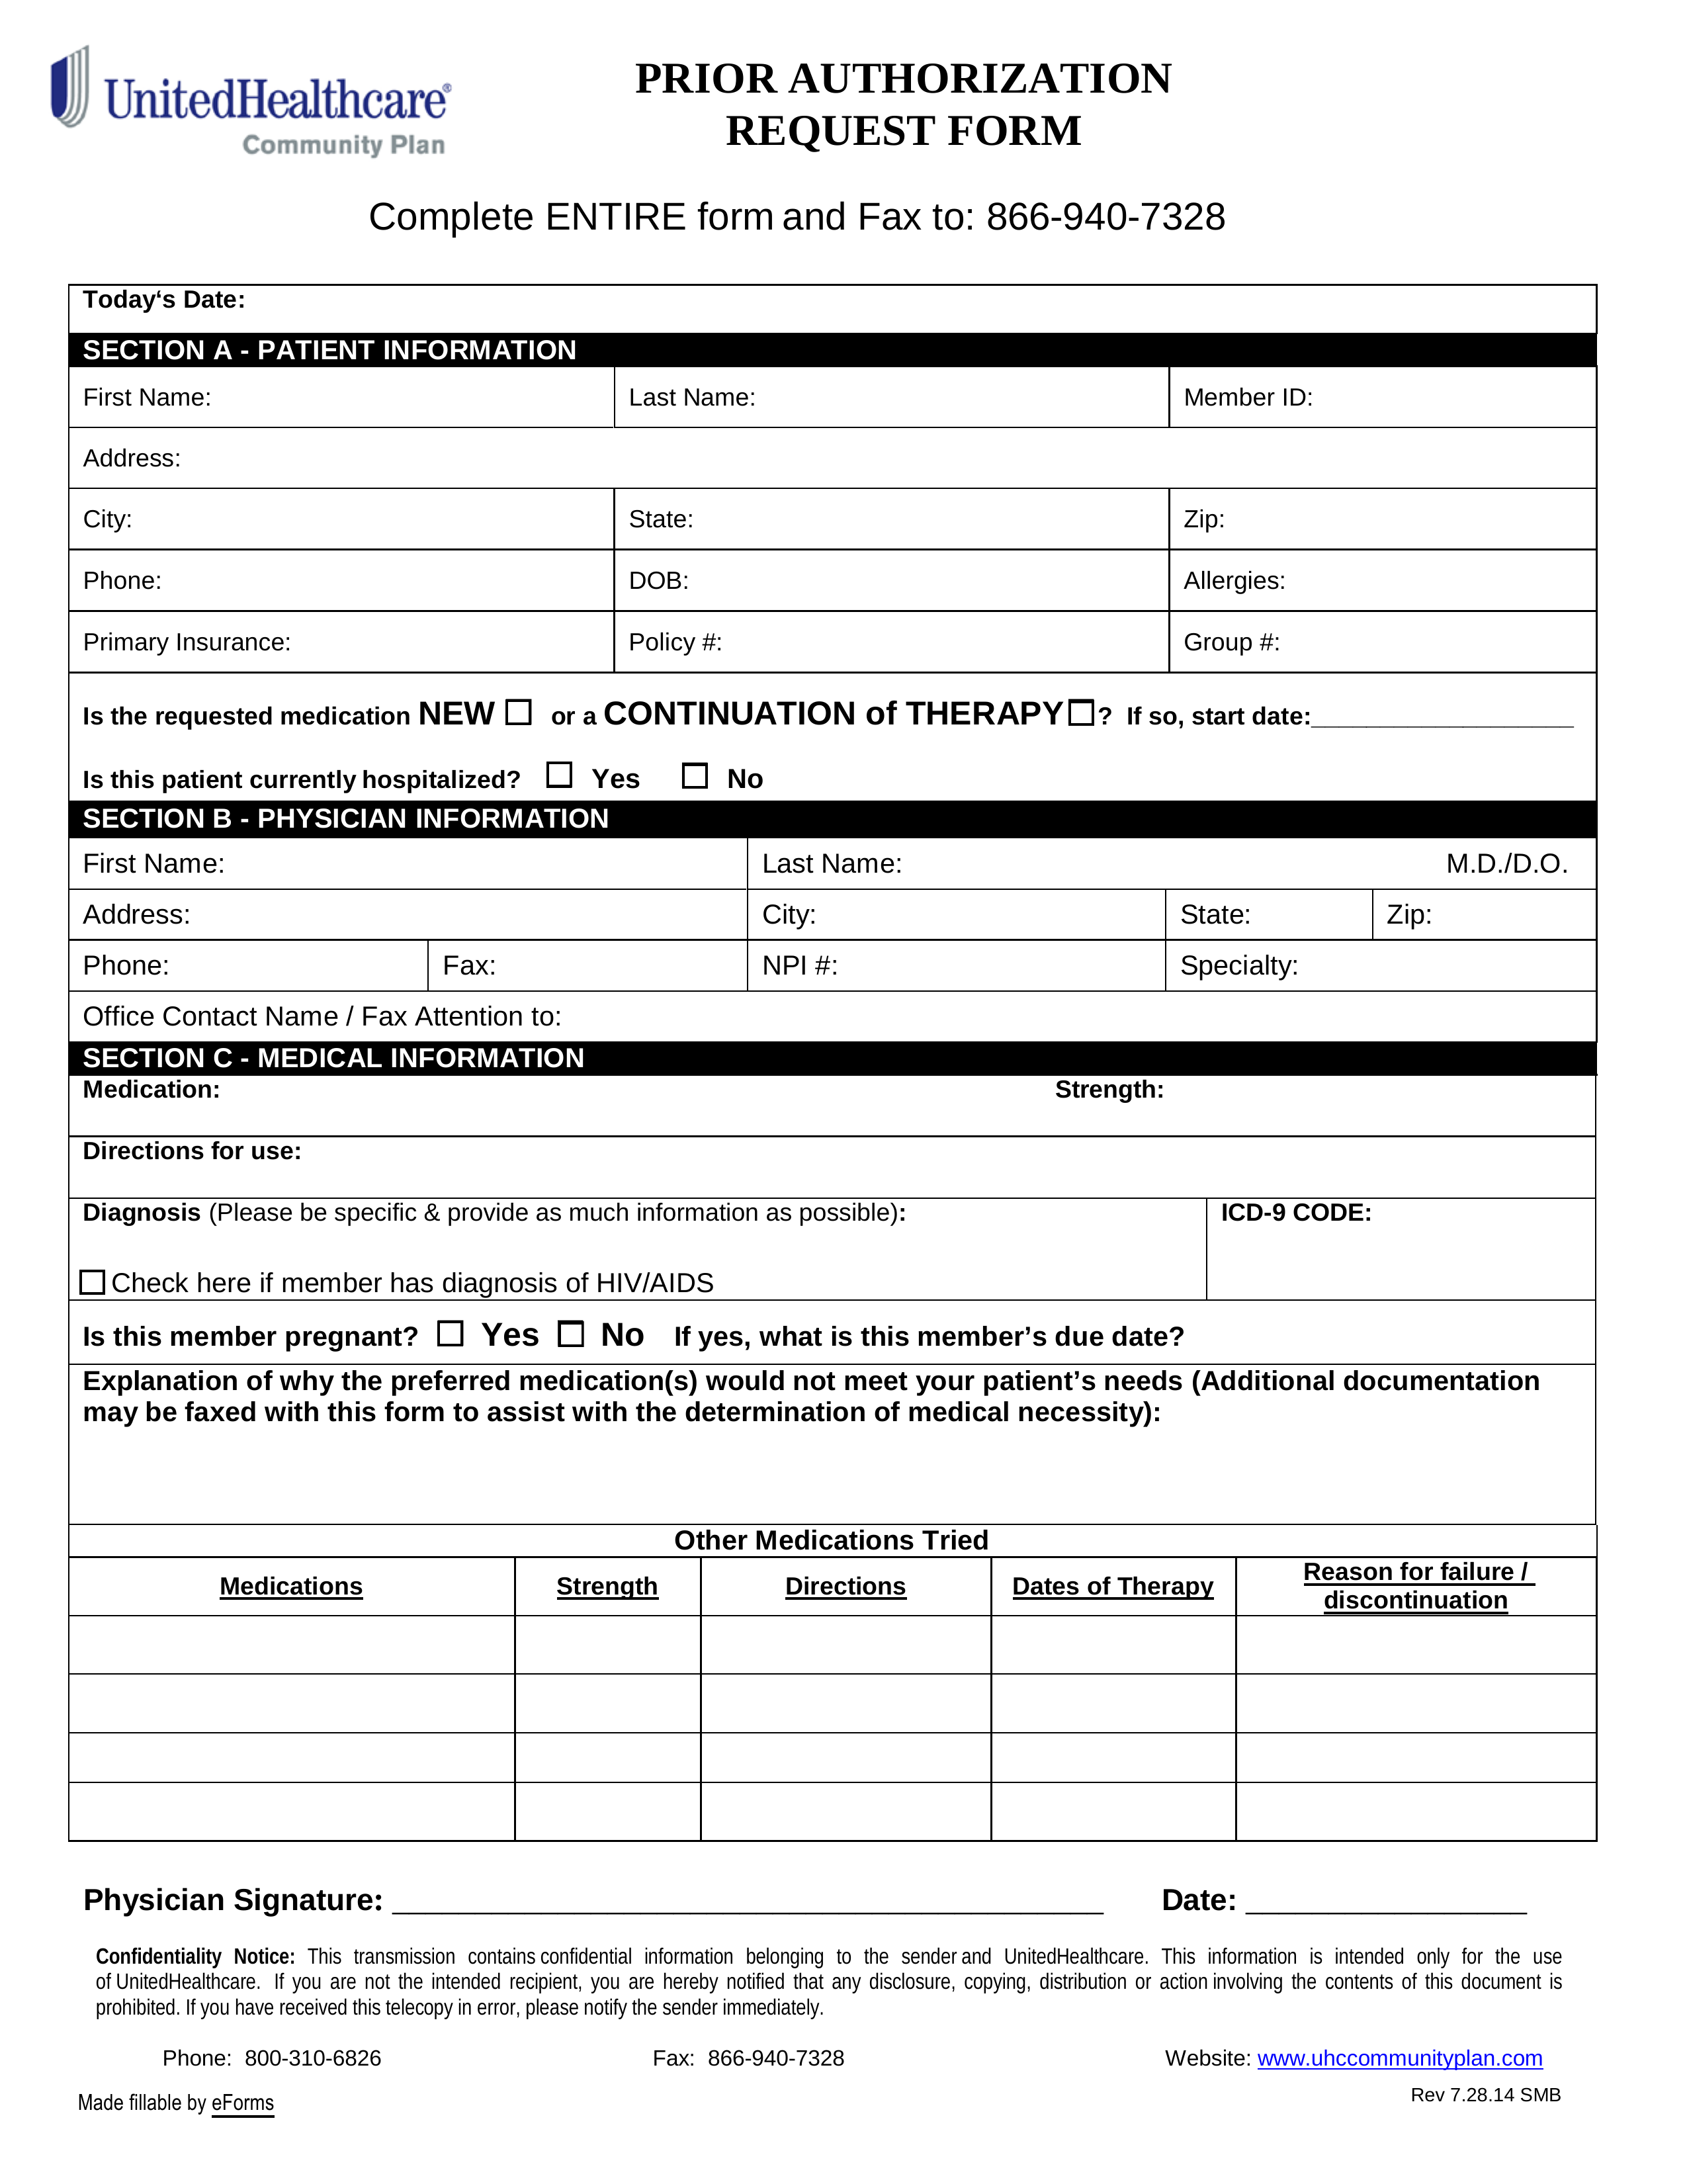 UnitedHealthcare Prior (Rx) Authorization Form